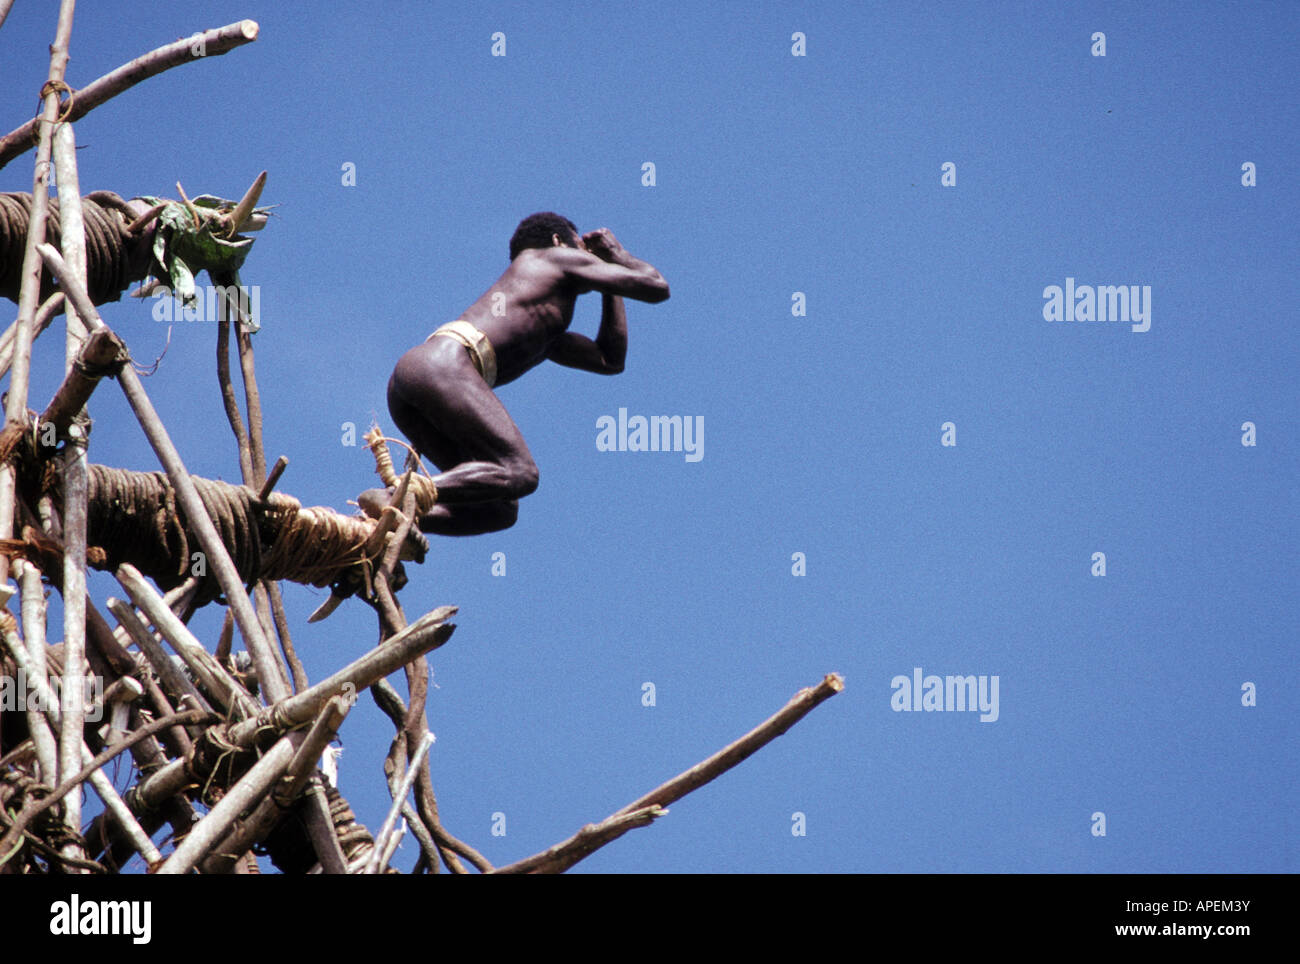 Oceano Pacifico, Vanuatu, Isola di Pentecoste, nativo Islander saltando dalla piattaforma Foto Stock